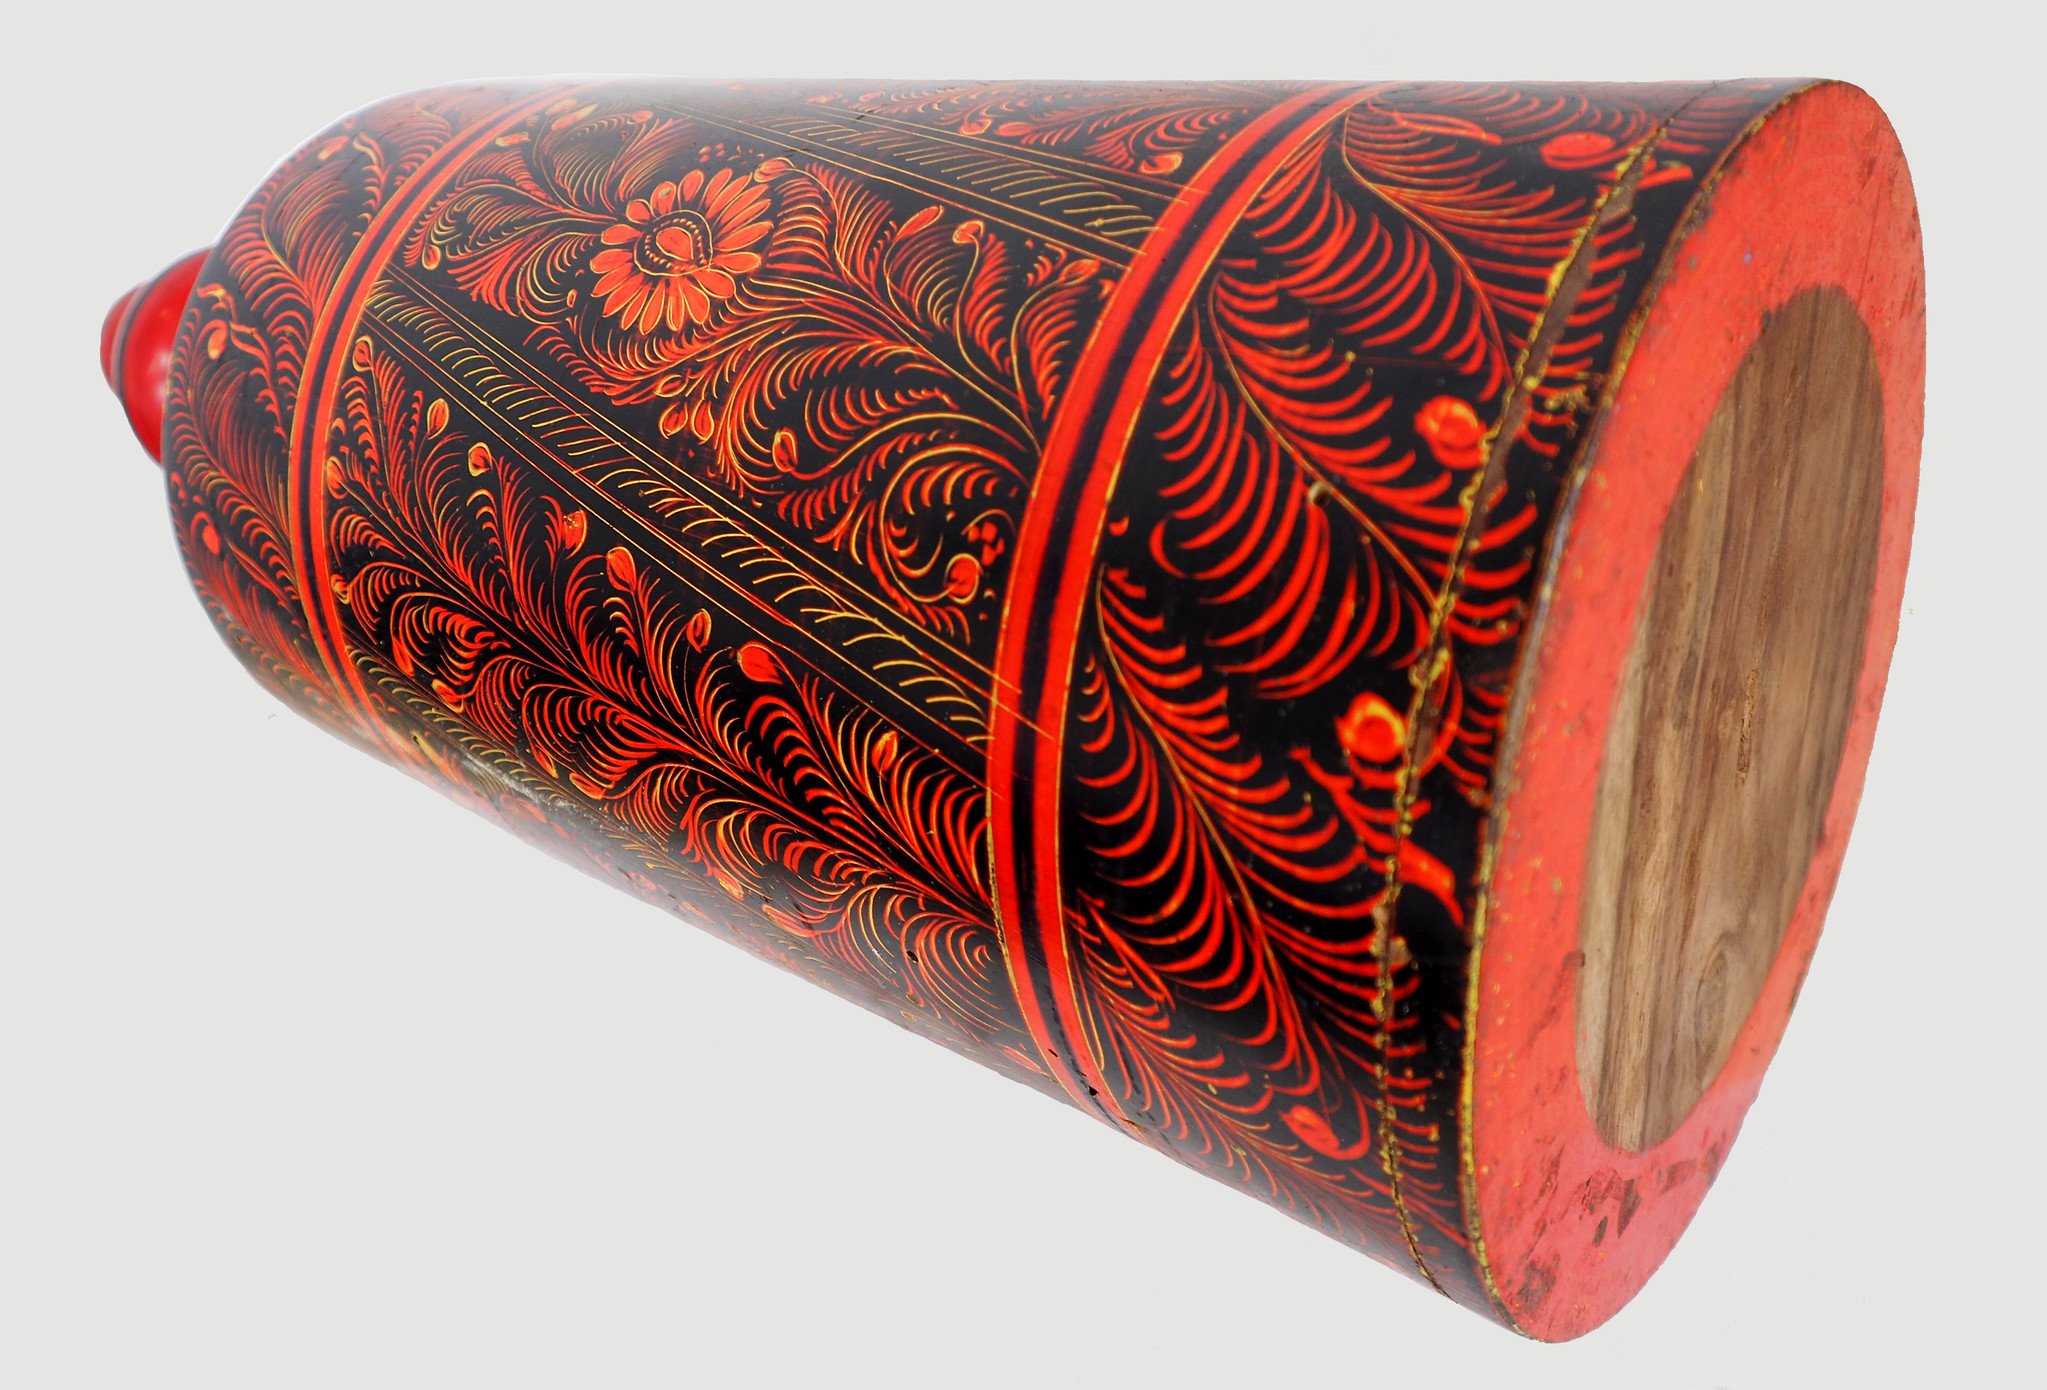 orient handgearbeitete Lacquerware Massiv Holz Flasche aus Afghanistan Pakistanv Rot